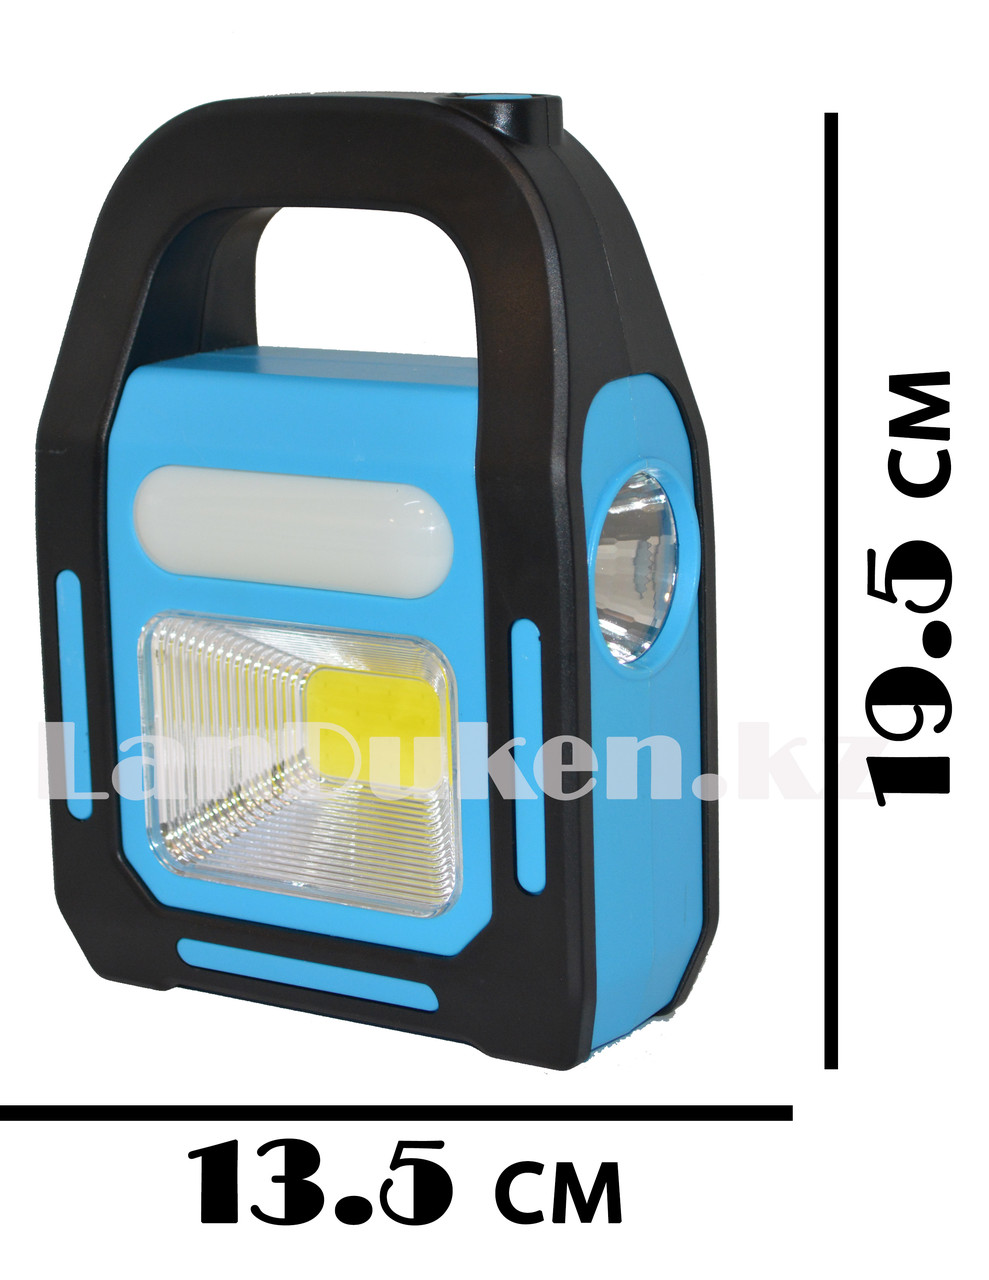 Ручной аккумуляторный фонарь светодиодный HB-9707A-1 LED с солнечной батареей 3 вида лампы, фото 1